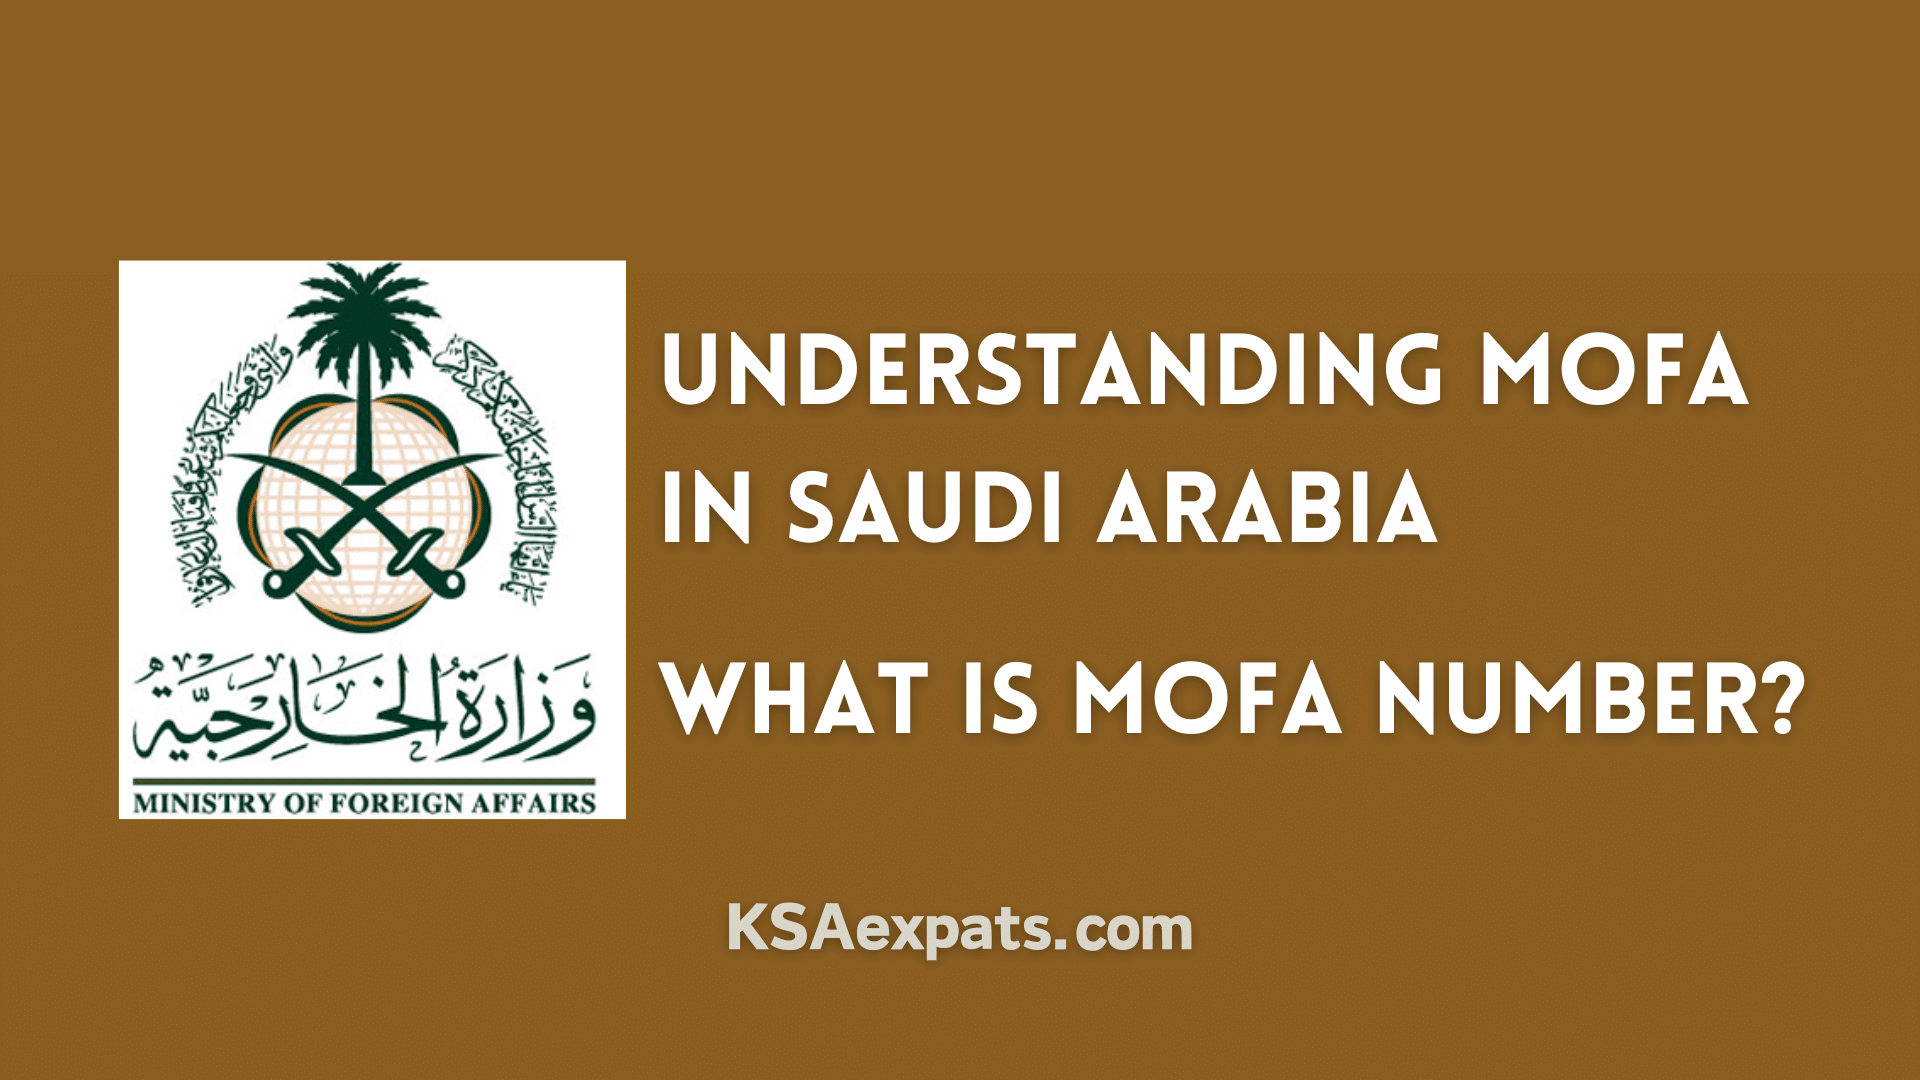 MOFA in Saudi Arabia, MOFA Number